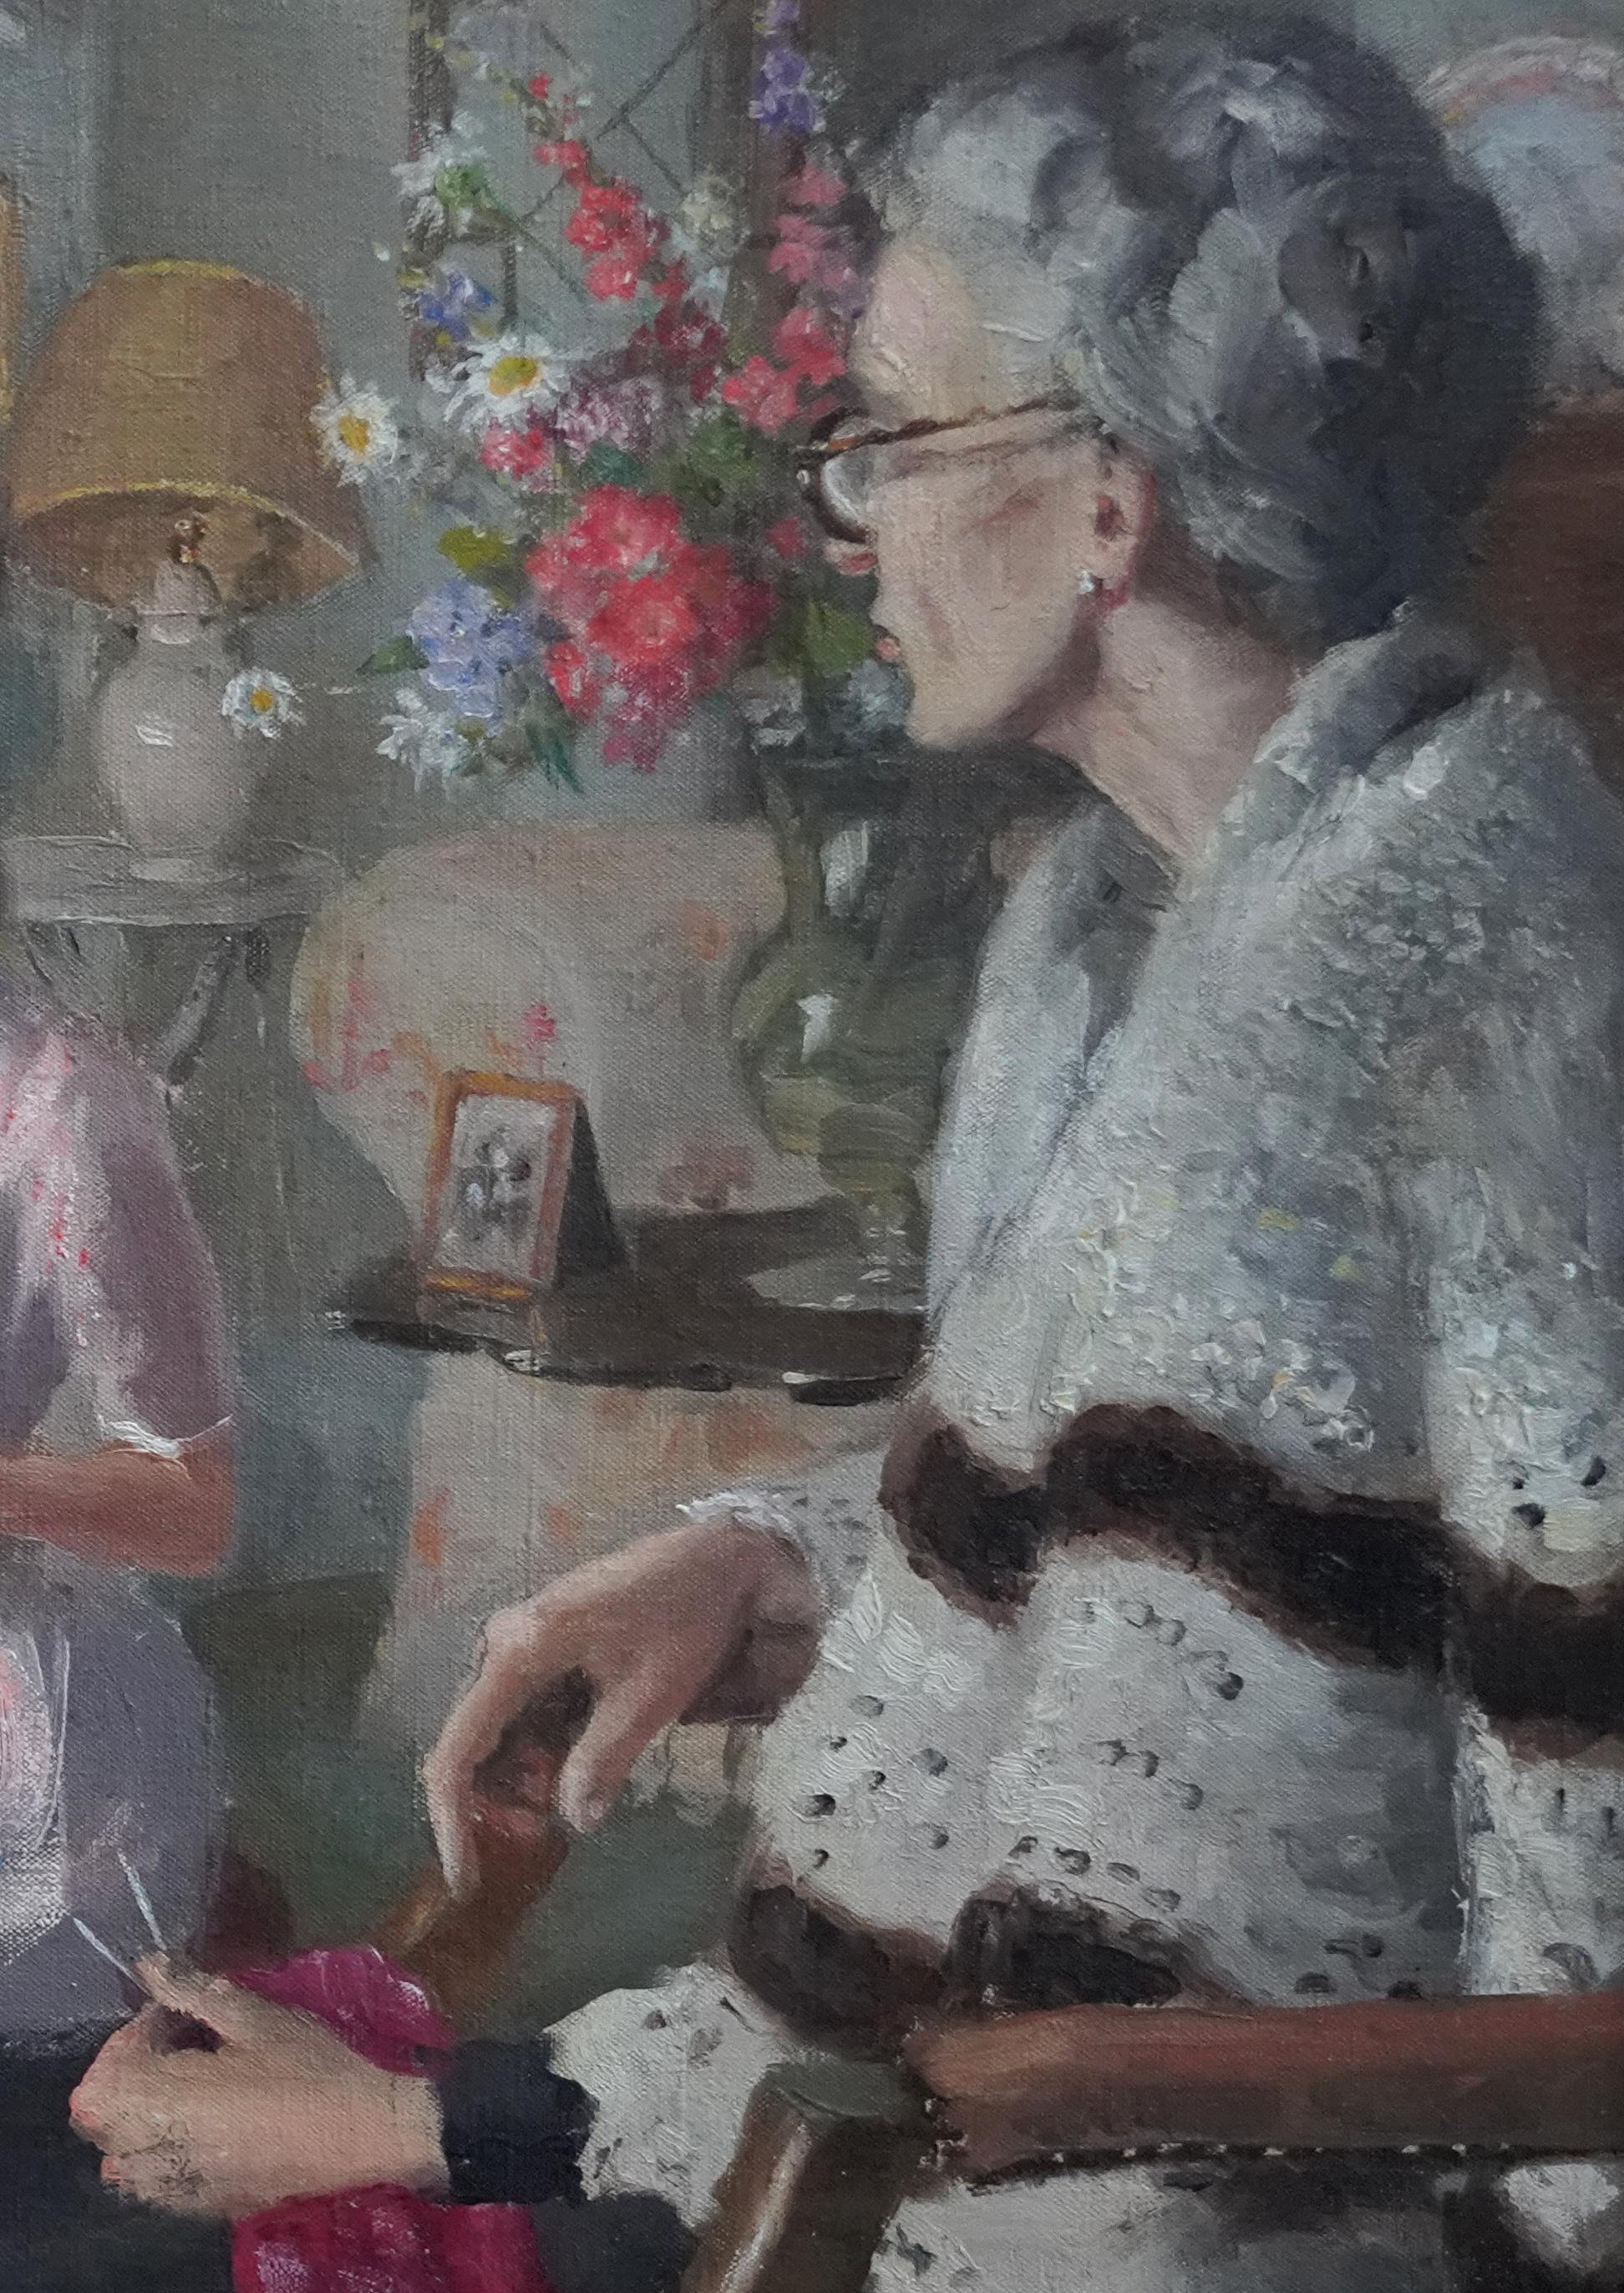 Dieses reizende britische Porträt-Ölgemälde ist von dem bekannten britischen Künstler Anthony Devas. Das Gemälde wurde um 1940 gemalt und zeigt eine sitzende Großmutter und eine Enkeltochter in einem schönen Wohnzimmer. Die Großmutter hat ihr